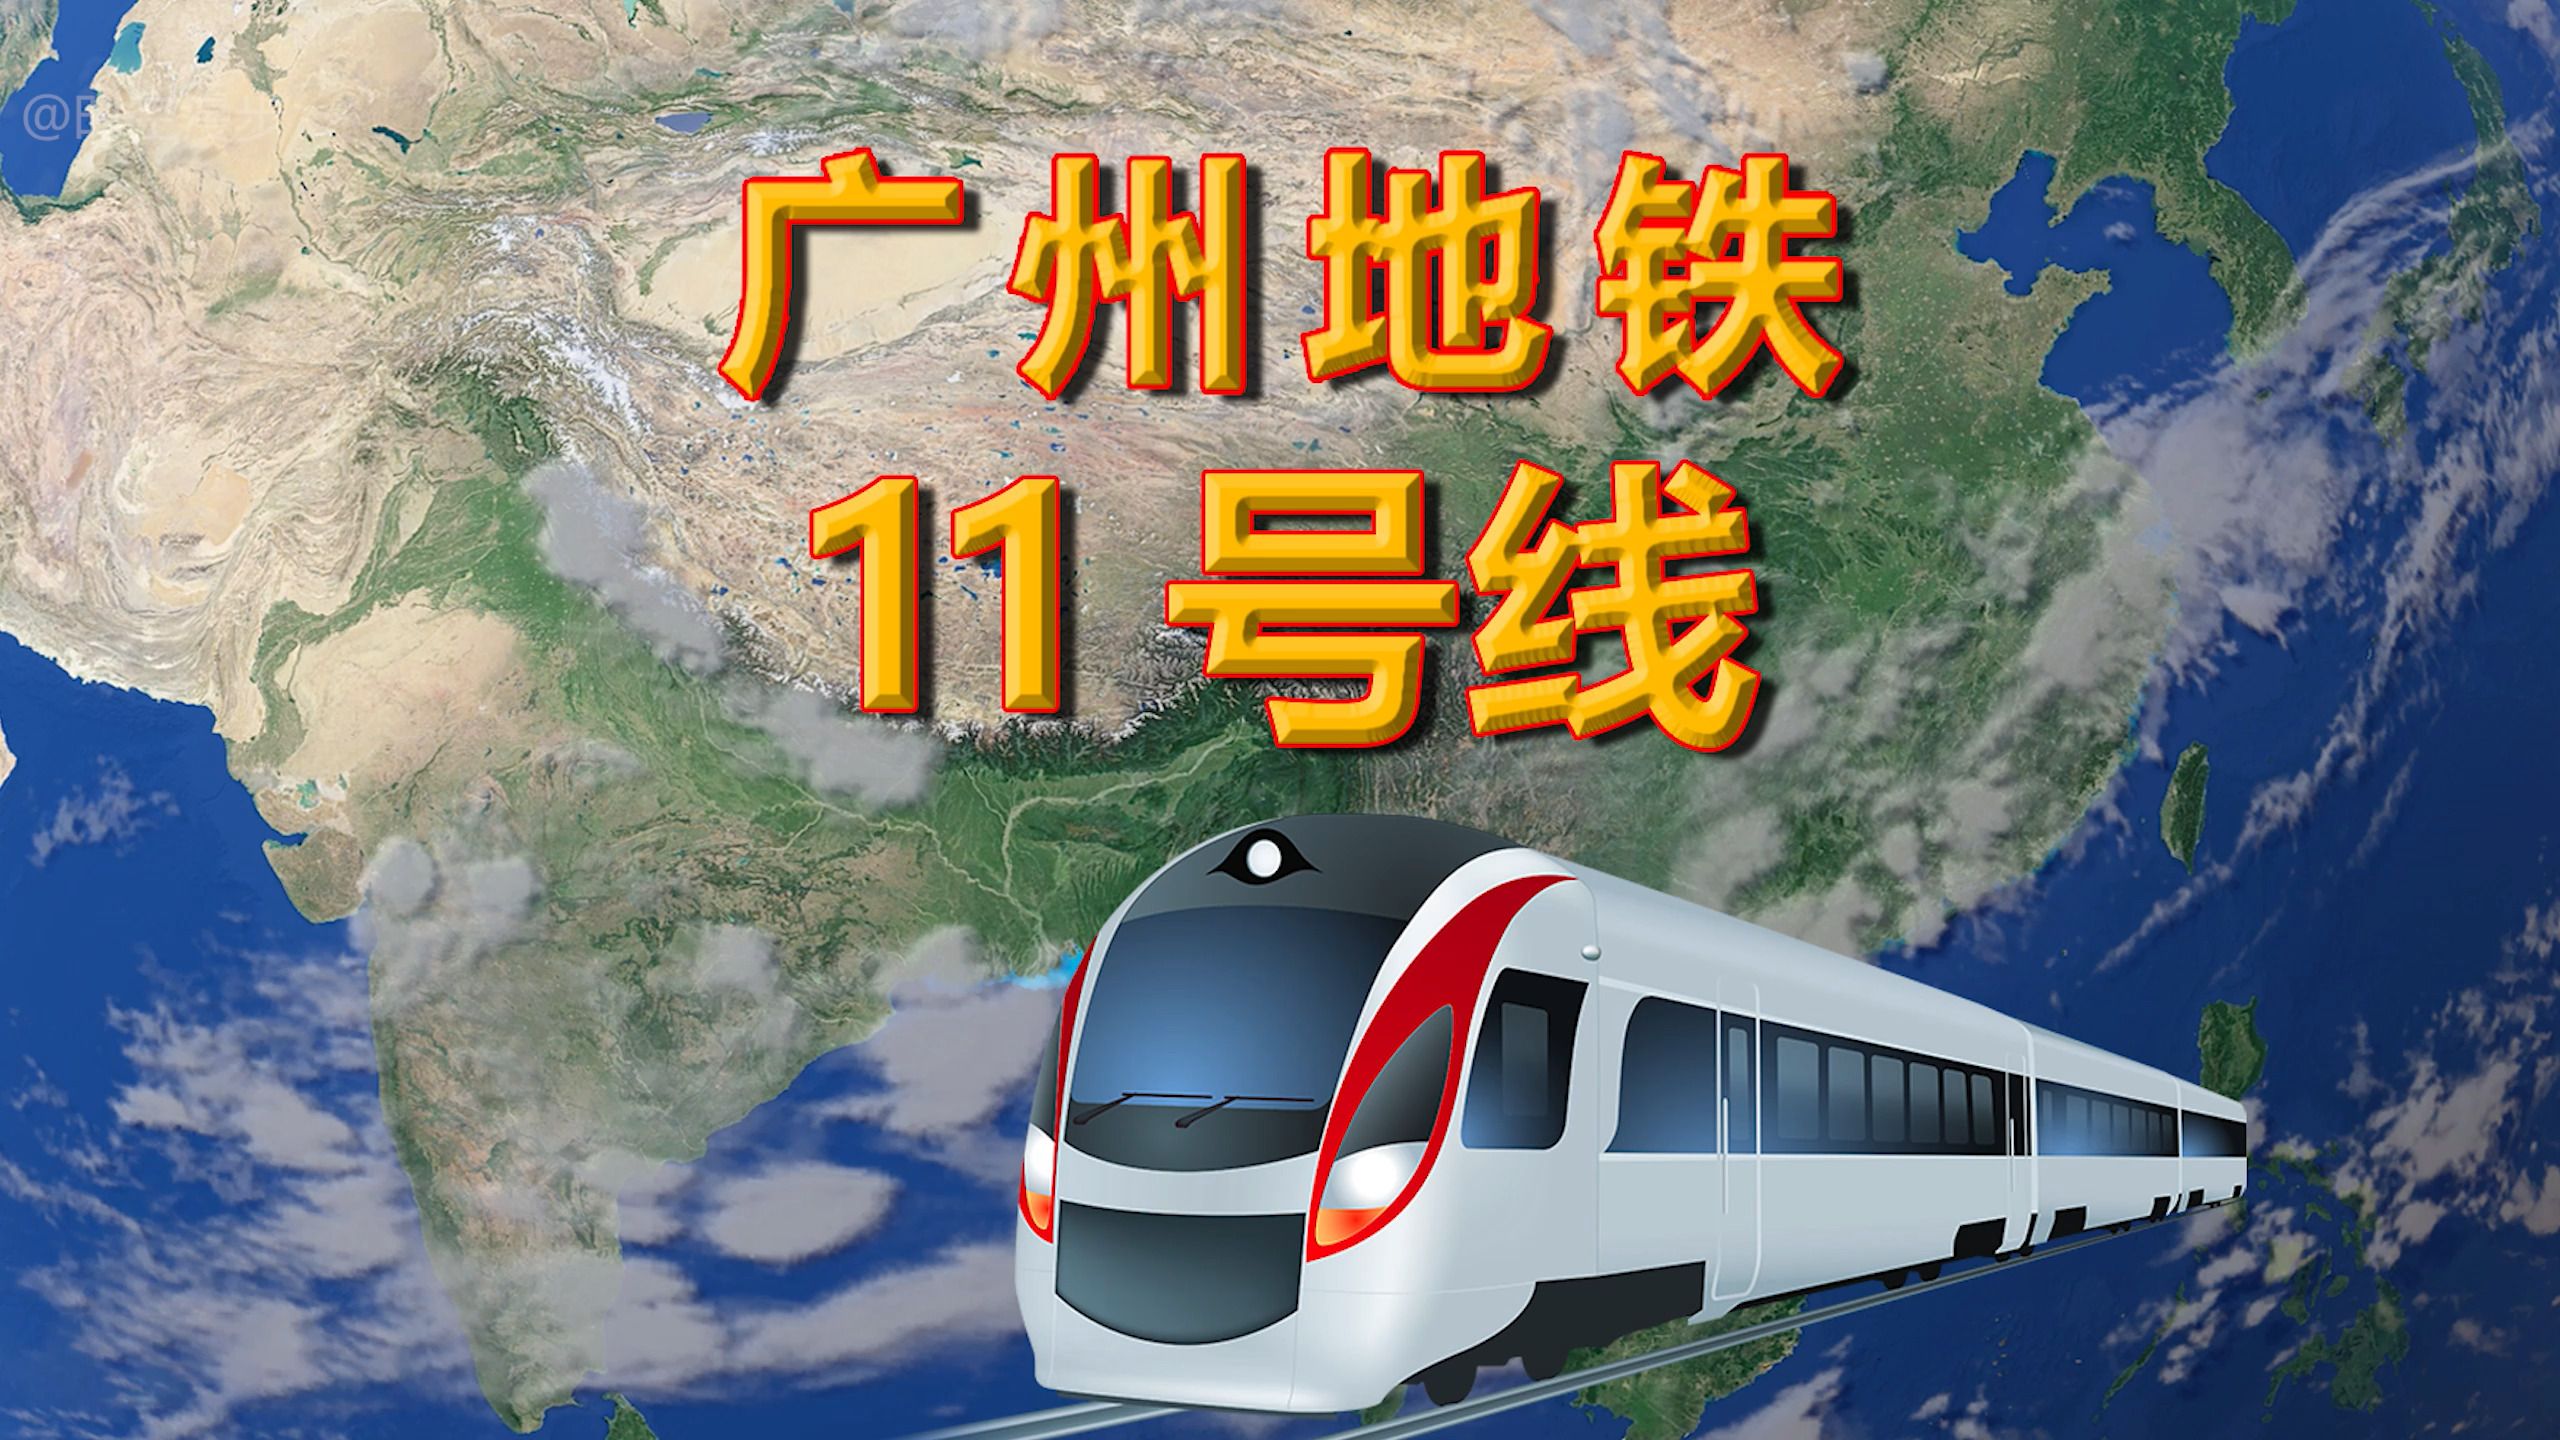 广州地铁11号线——广州市第一条特大环线地铁,线路全长442公里